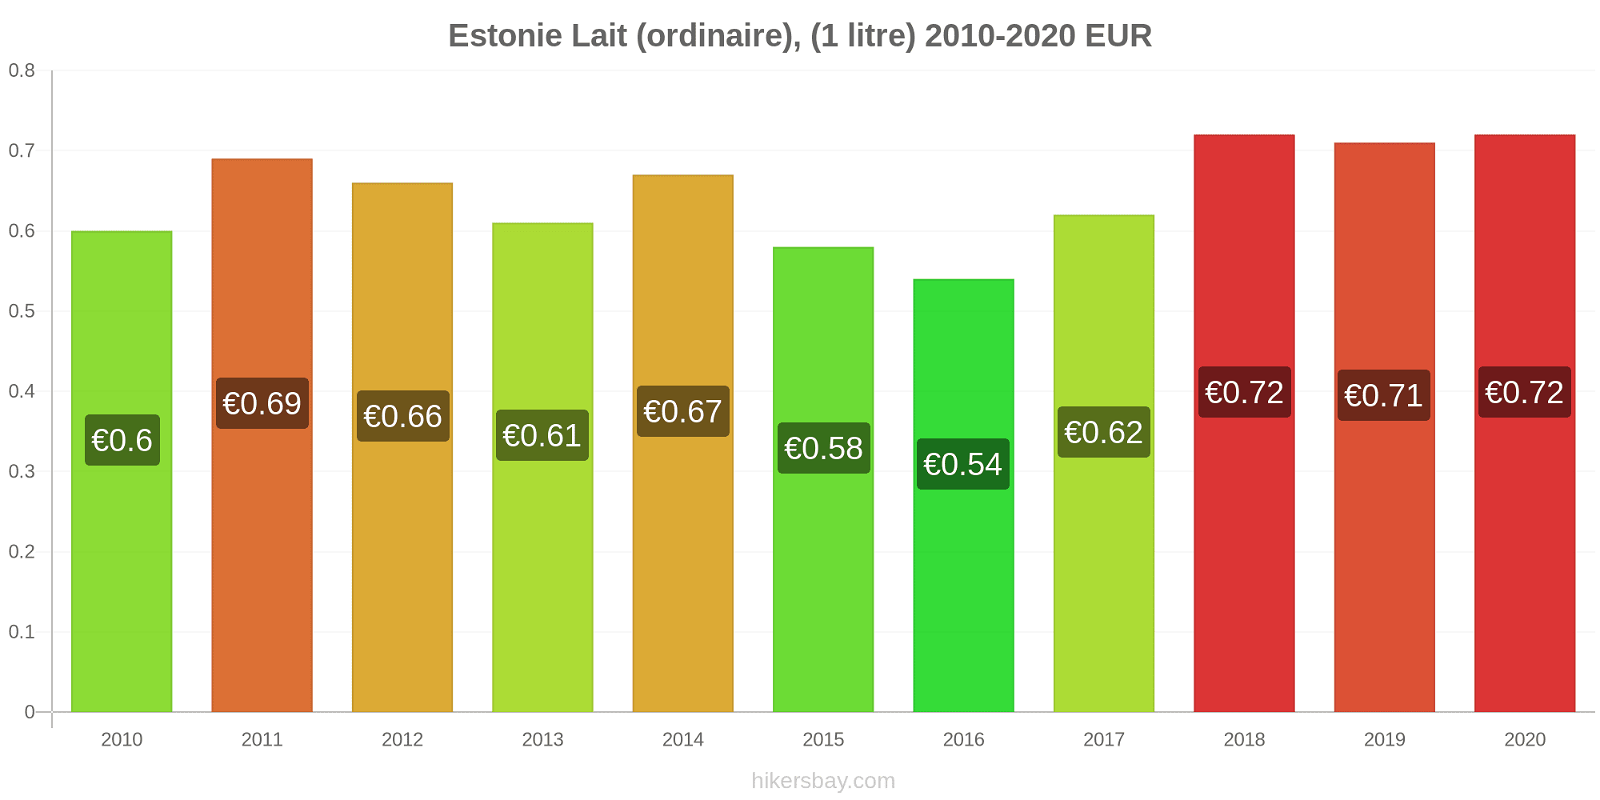 Estonie changements de prix (Régulier), lait (1 litre) hikersbay.com